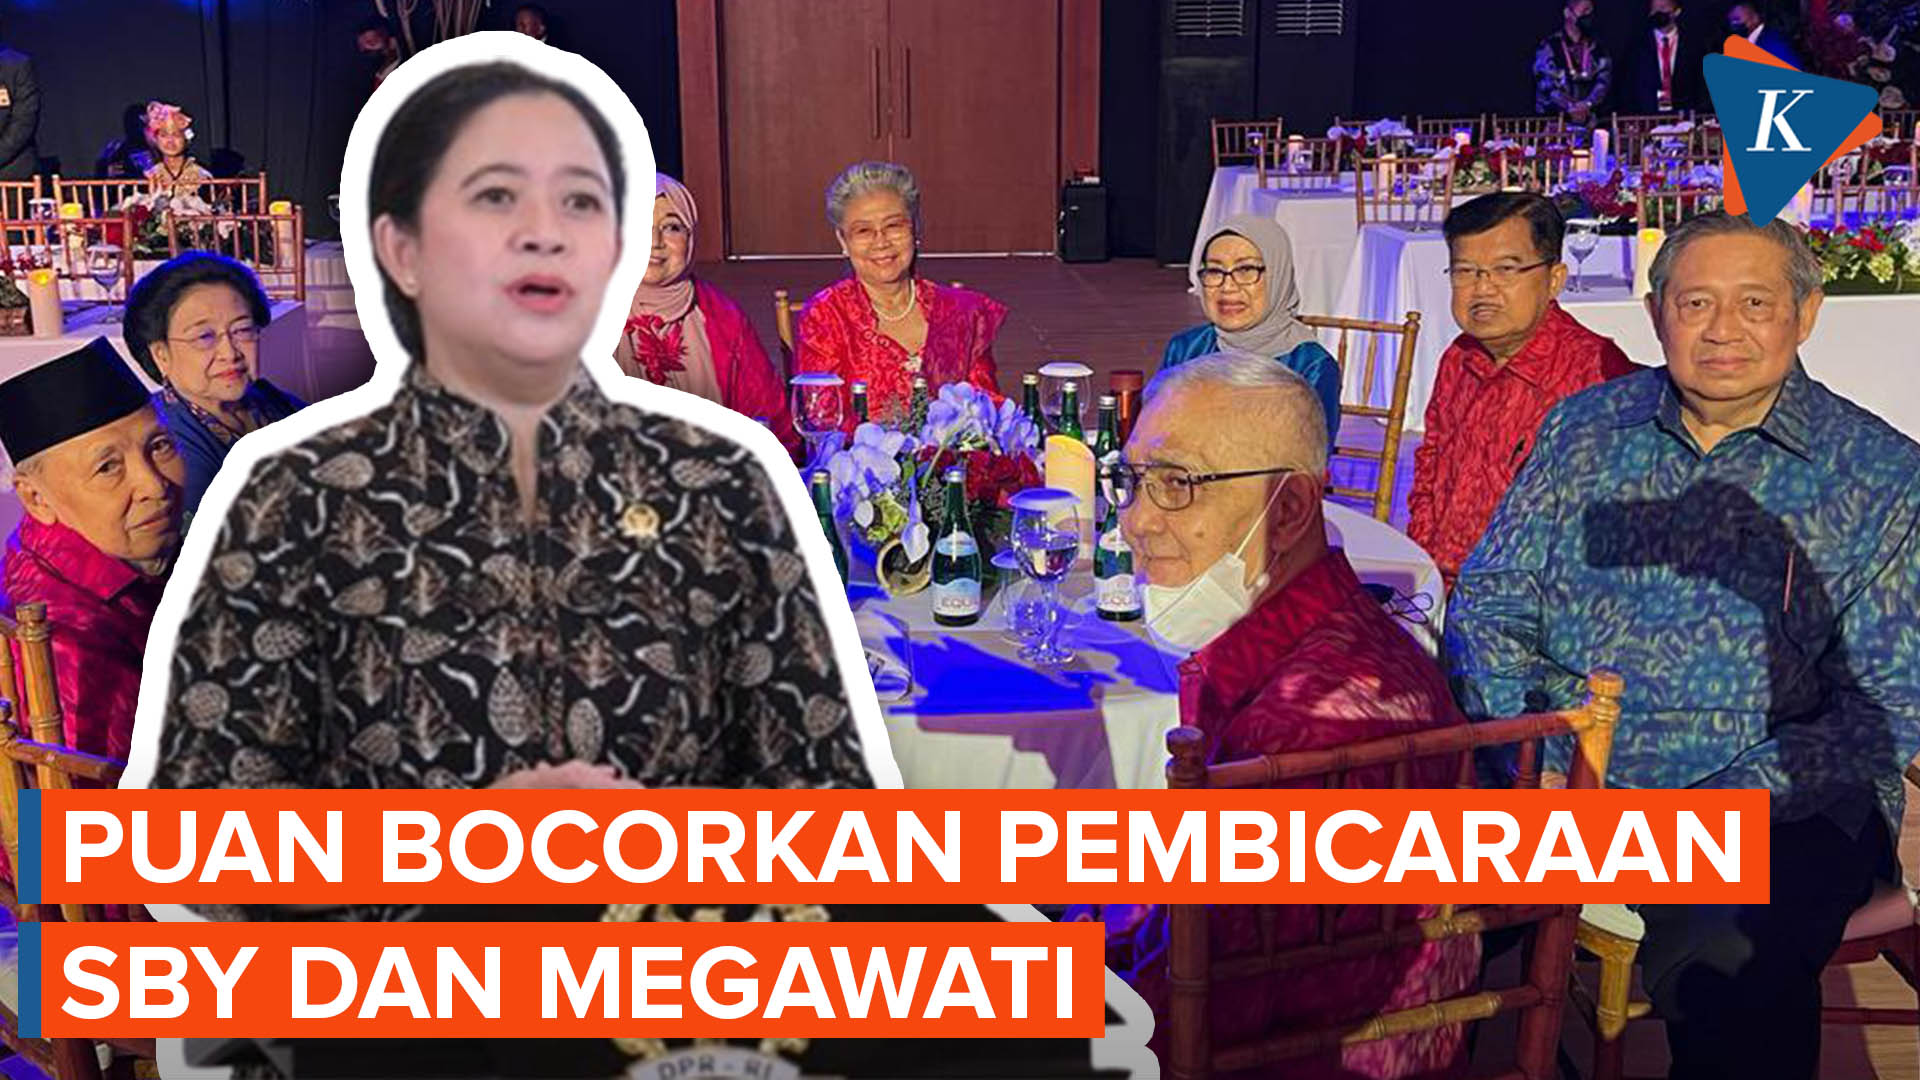 Megawati dan SBY Duduk Satu Meja Saat Gala Dinner G20, Ini yang Dibahas